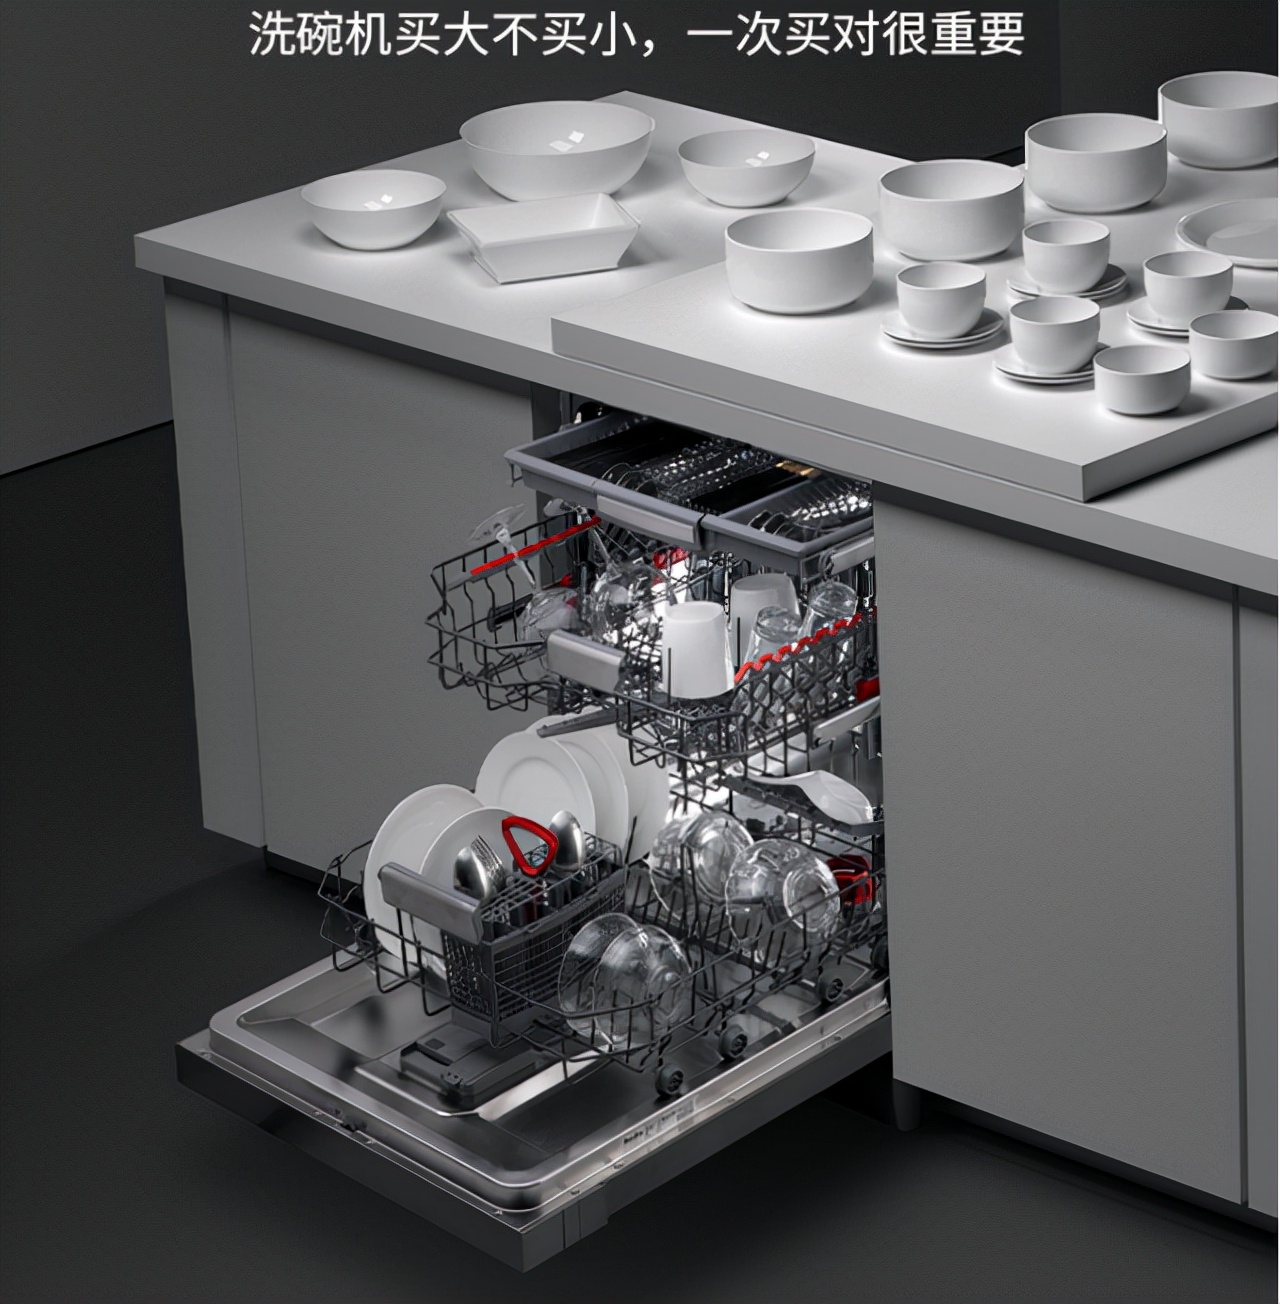 十大厨卫电器,中国十大厨卫电器品牌